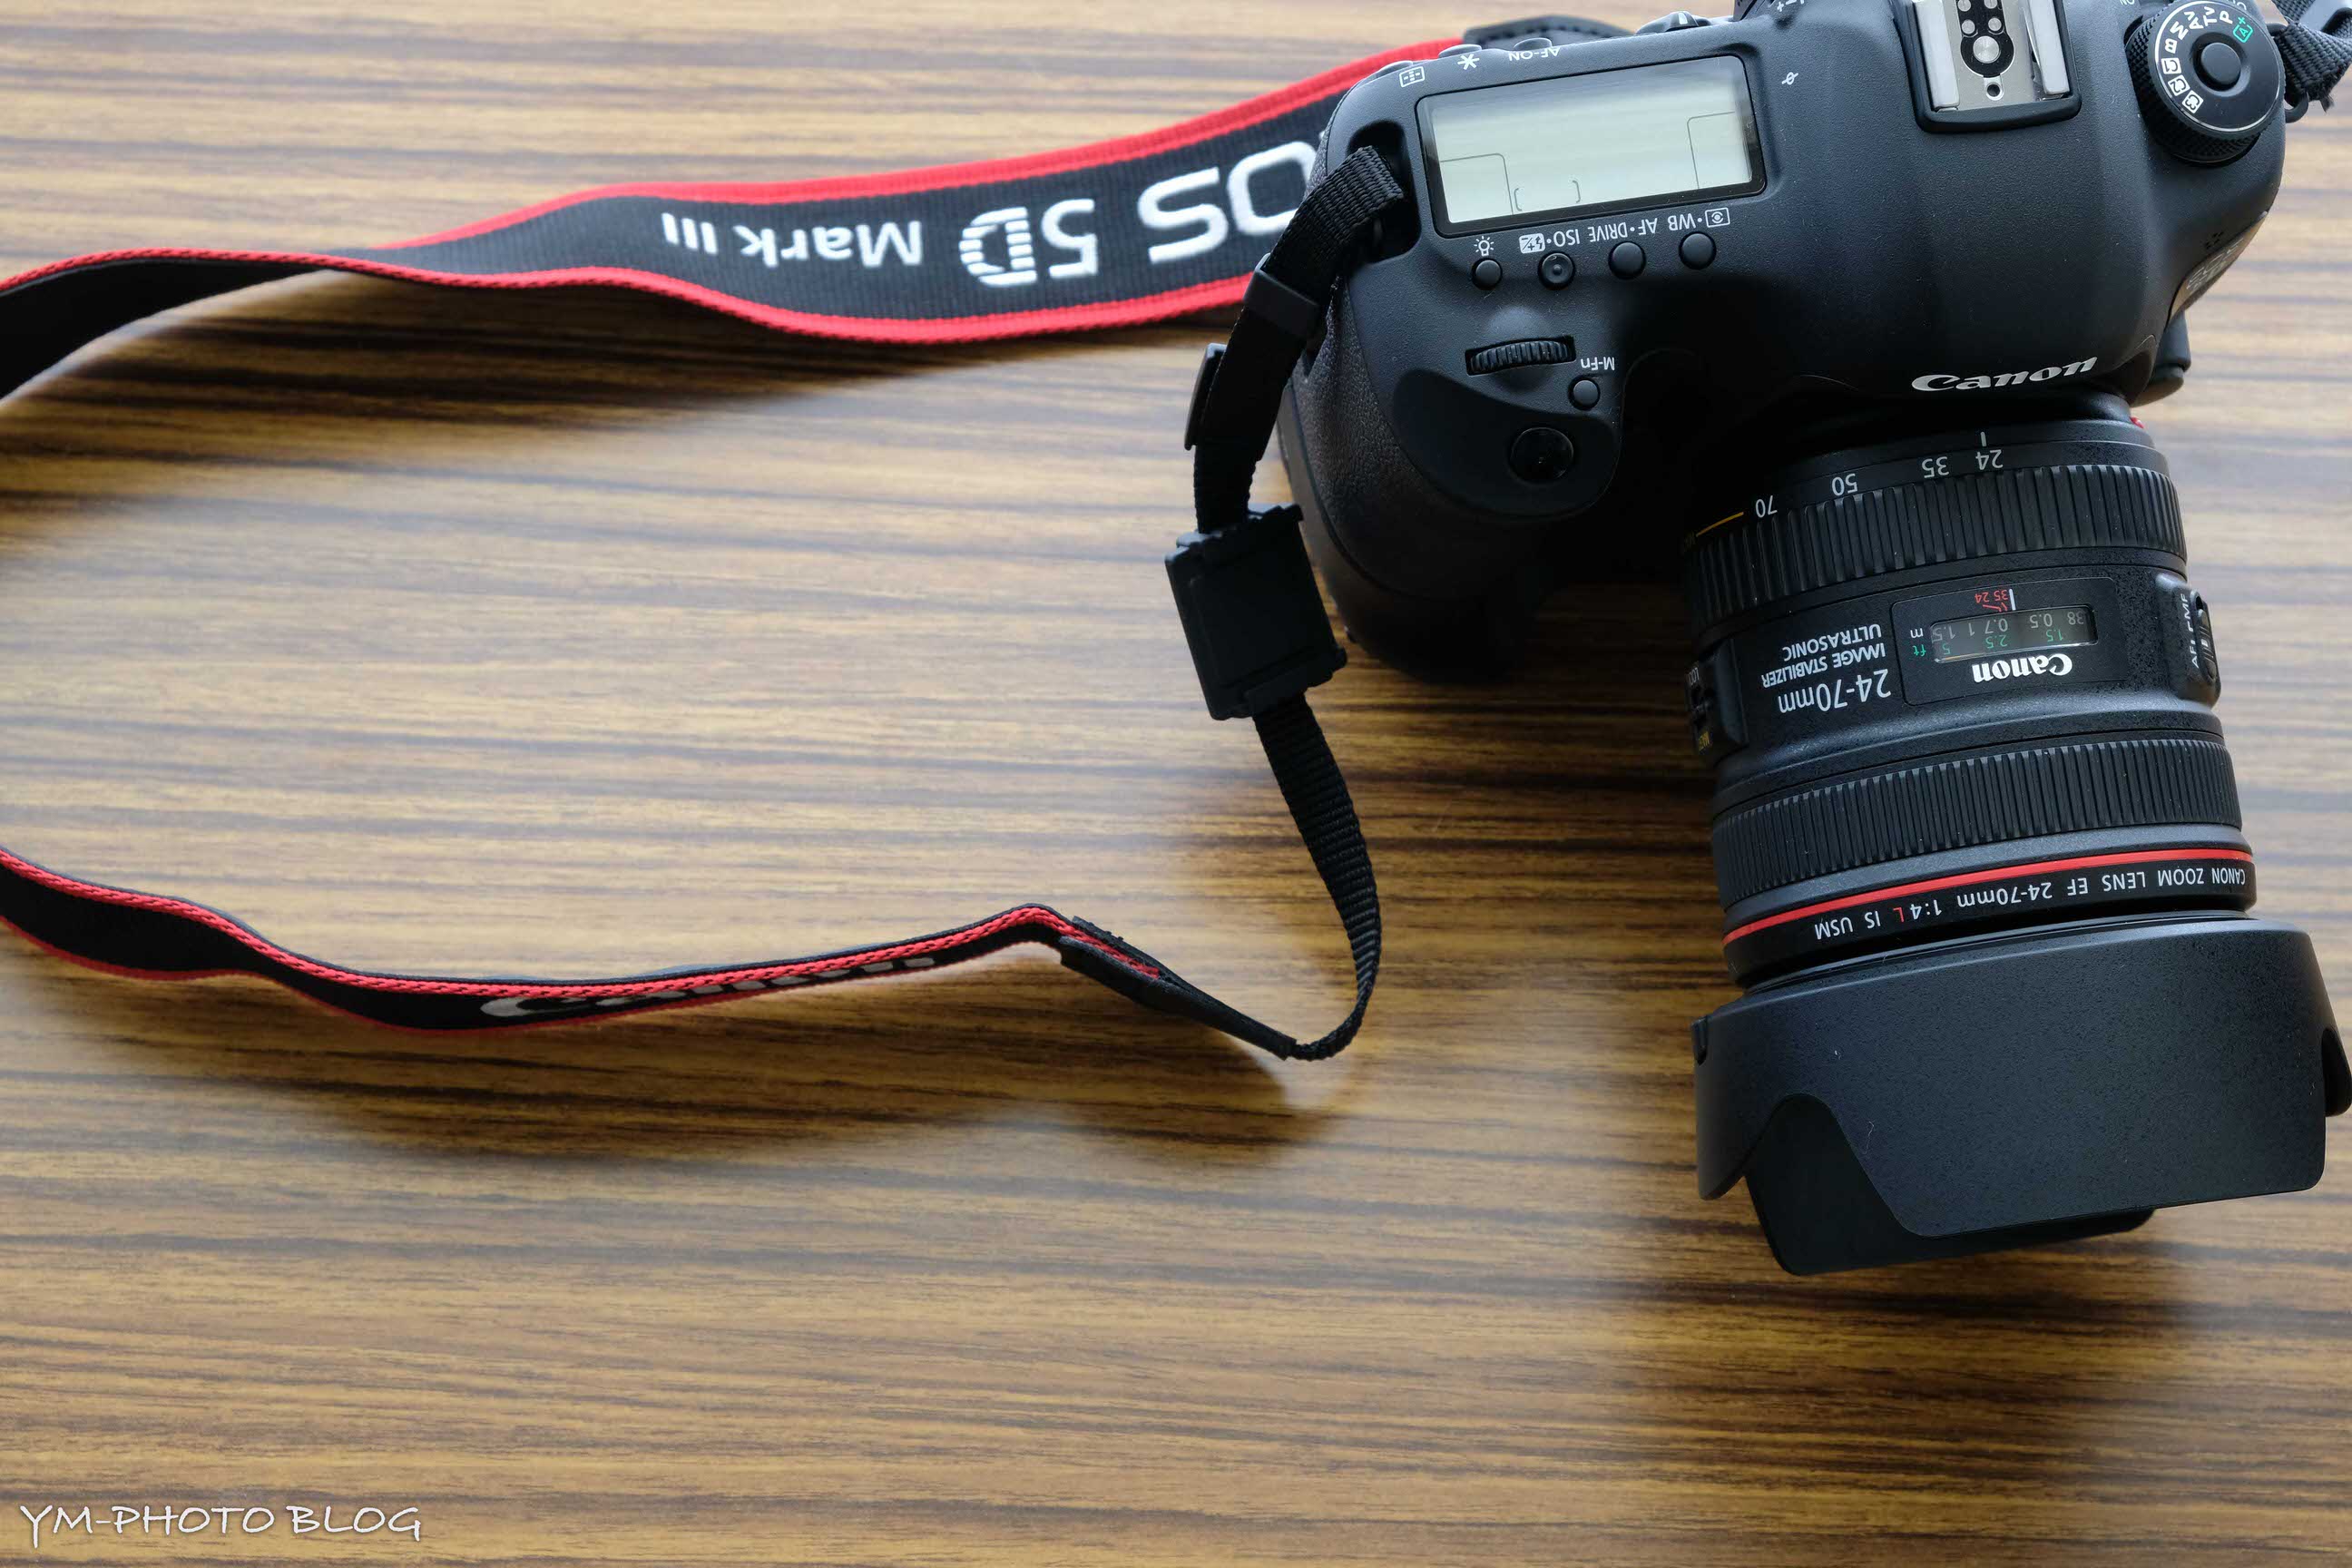 機材レビュー】Canon EF40mm F2.8 STM + BG-E11 - YM-PHOTO BLOG